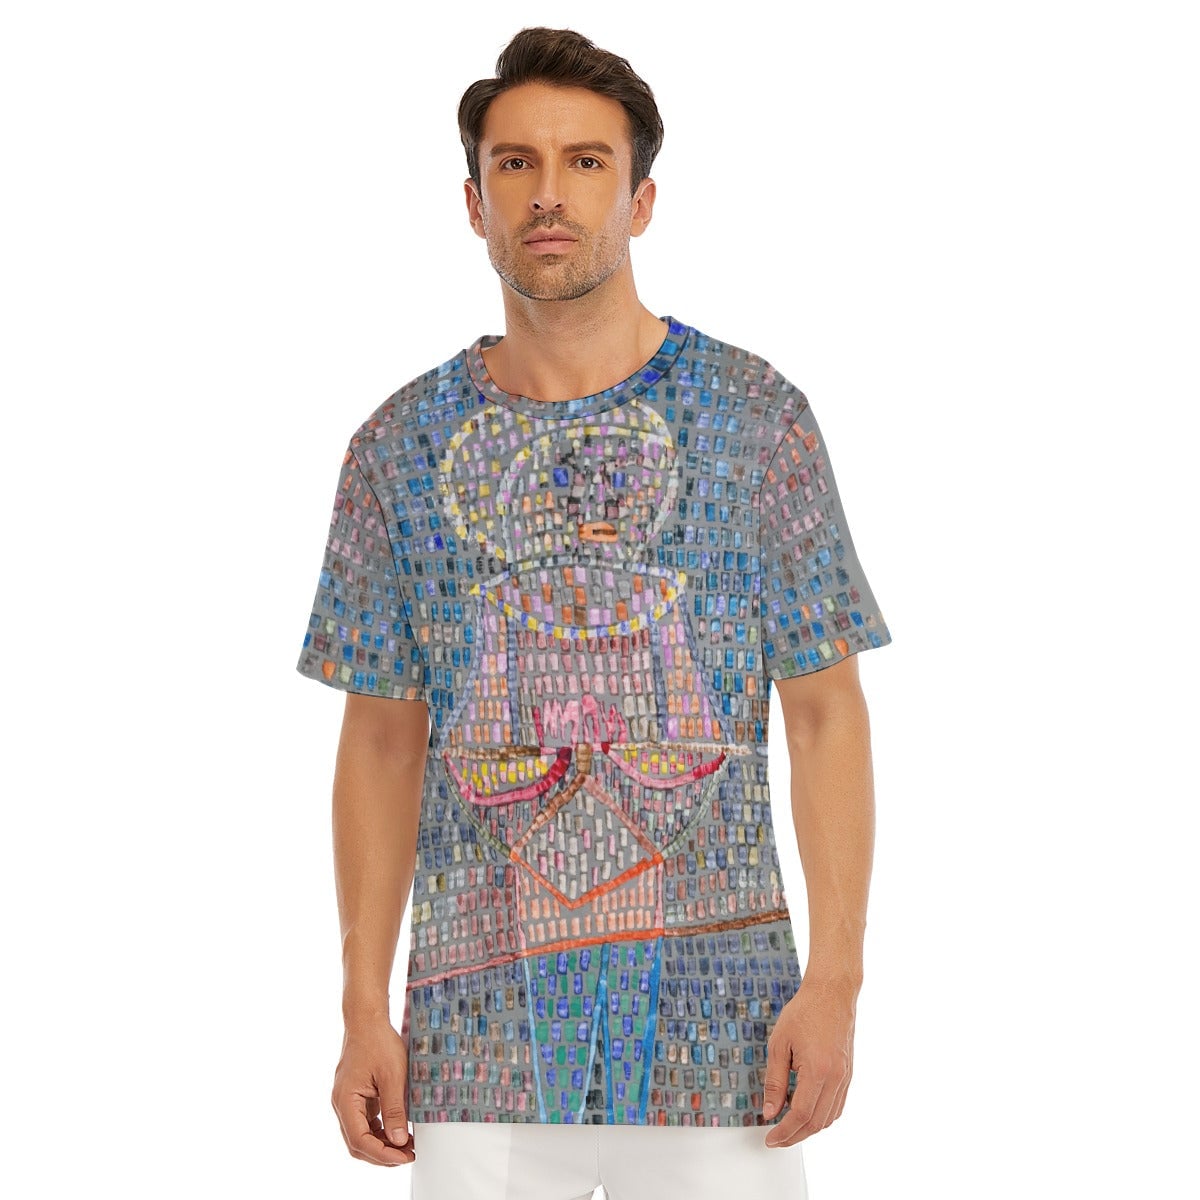 Boy in Fancy Dress Paul Klee T-Shirt - Wearable Art Tee